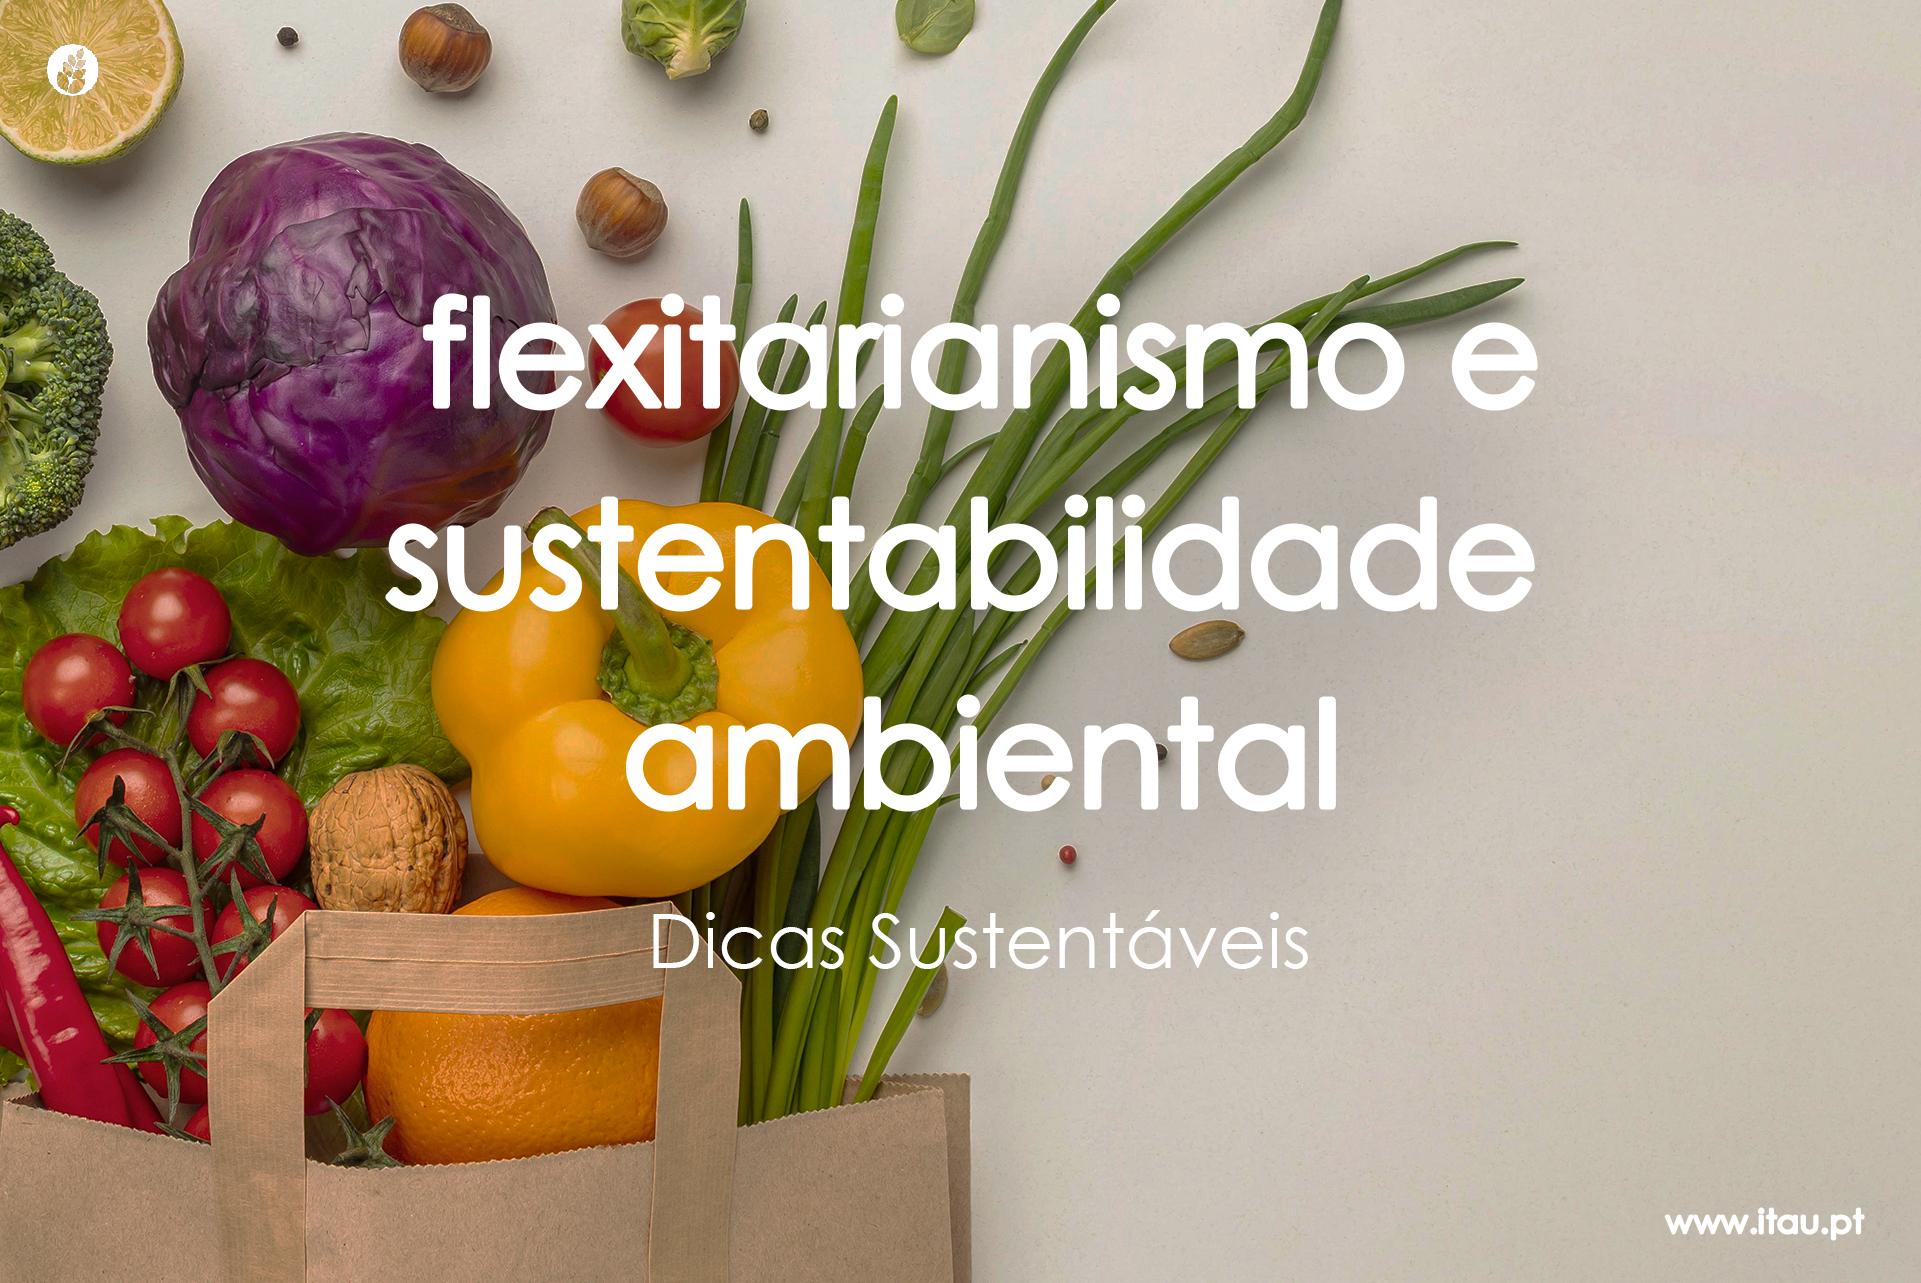 Flexitarianismo e sustentabilidade ambiental